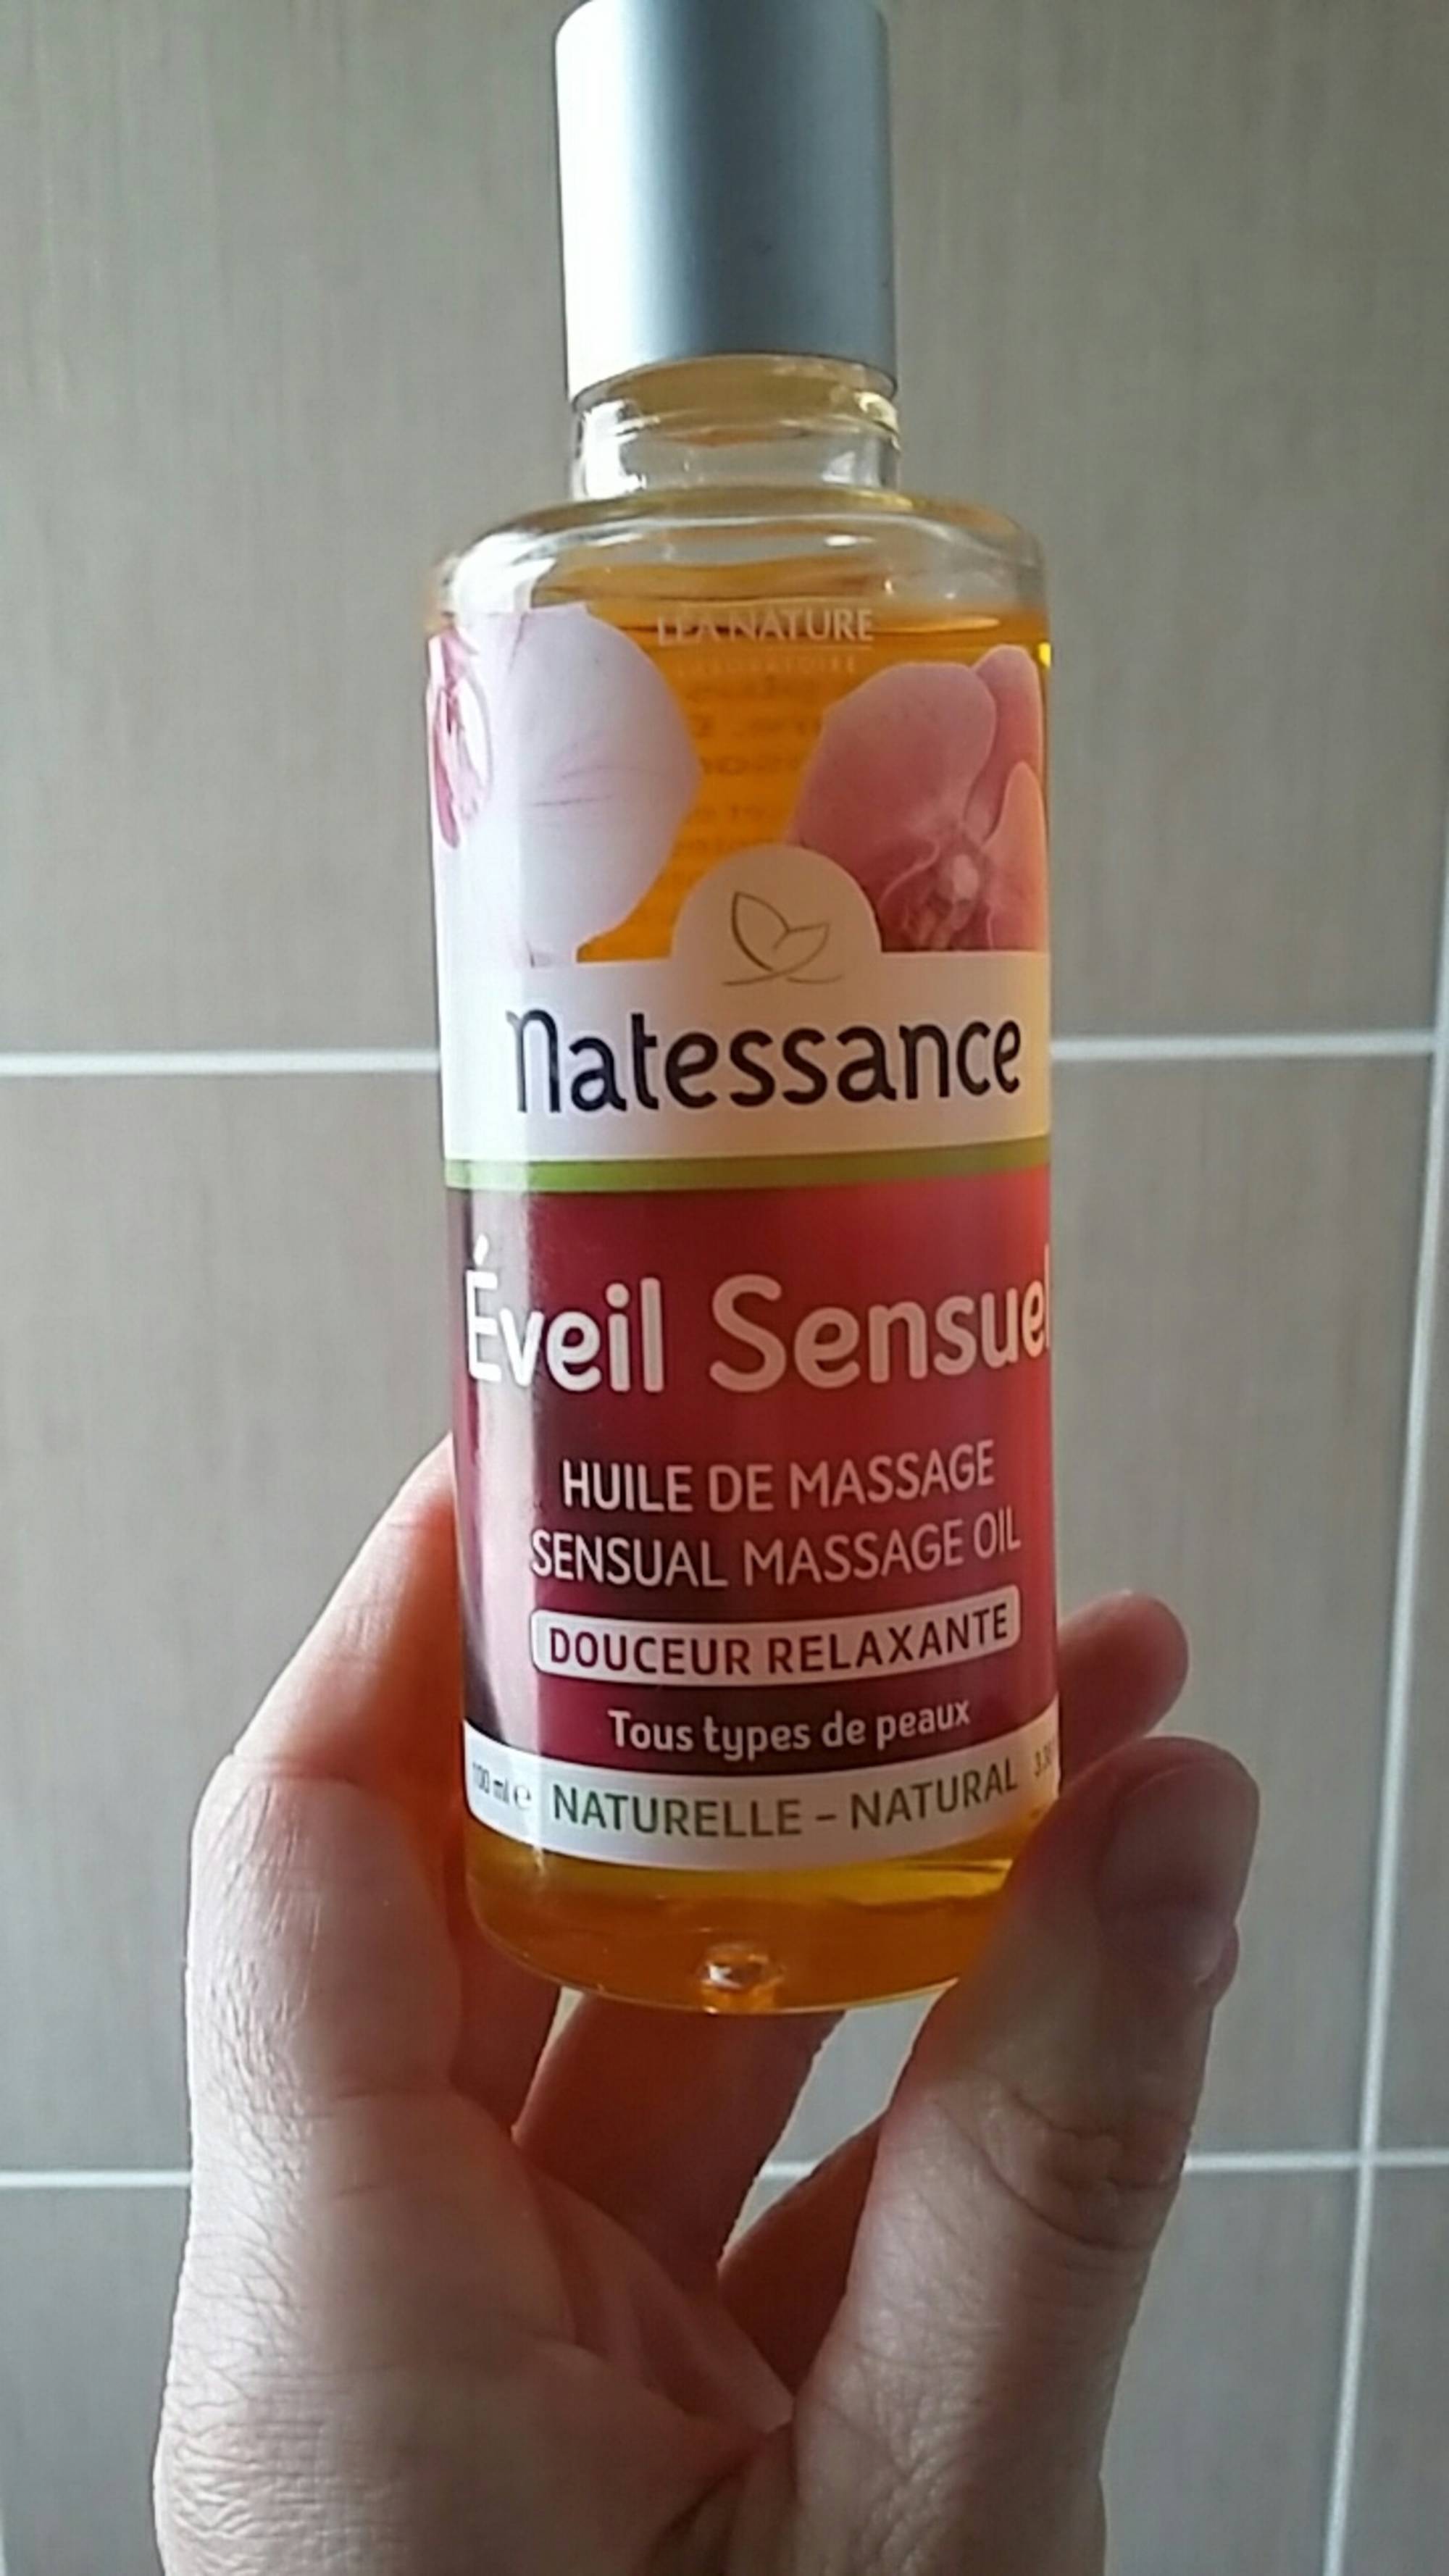 NATESSANCE - Eveil sensuel - Huile de massage